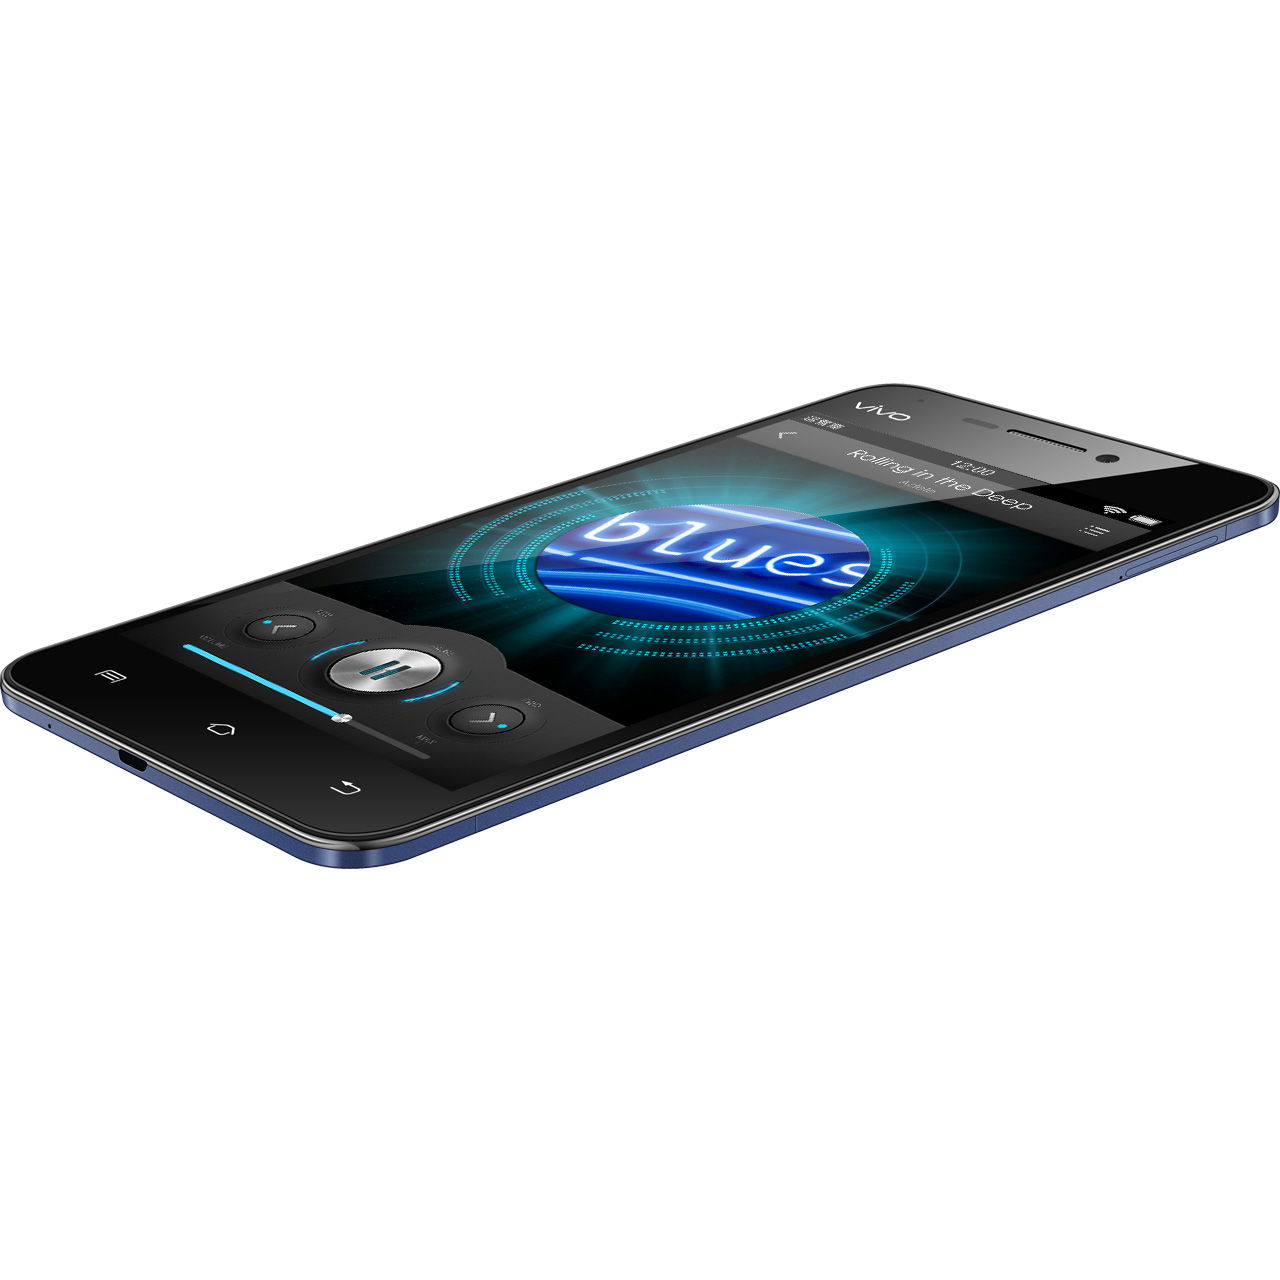 Smartphone siêu mỏng giá rẻ Vivo X3 – một siêu phẩm mang phong cách thể thao khỏe khoắn cùng màn hình HD 5 inch tuyệt đẹp